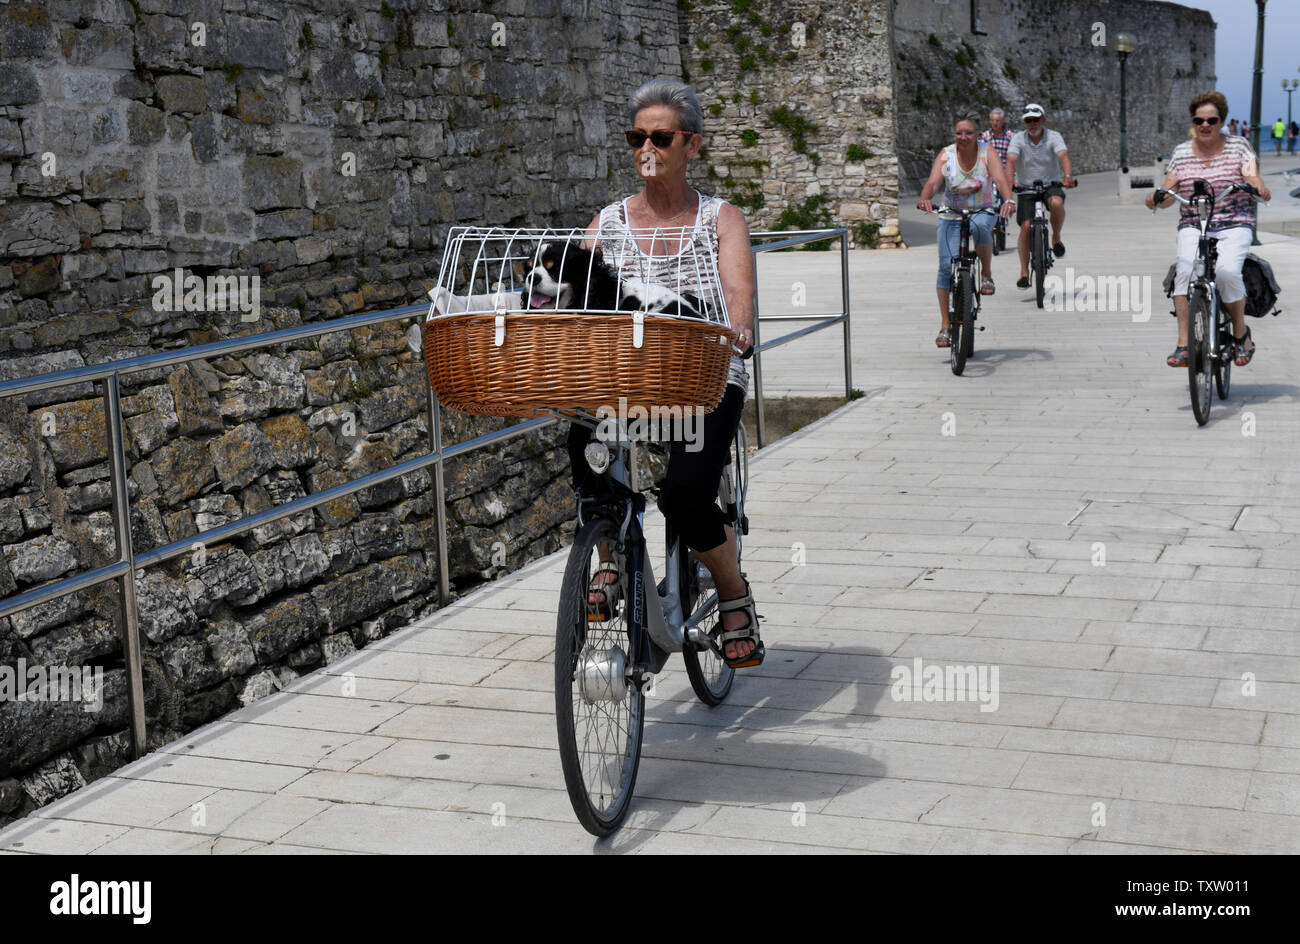 Haustiere auf Urlaub Frau Reiten Fahrrad mit Hund im Korb Porec, Kroatien Stockfoto